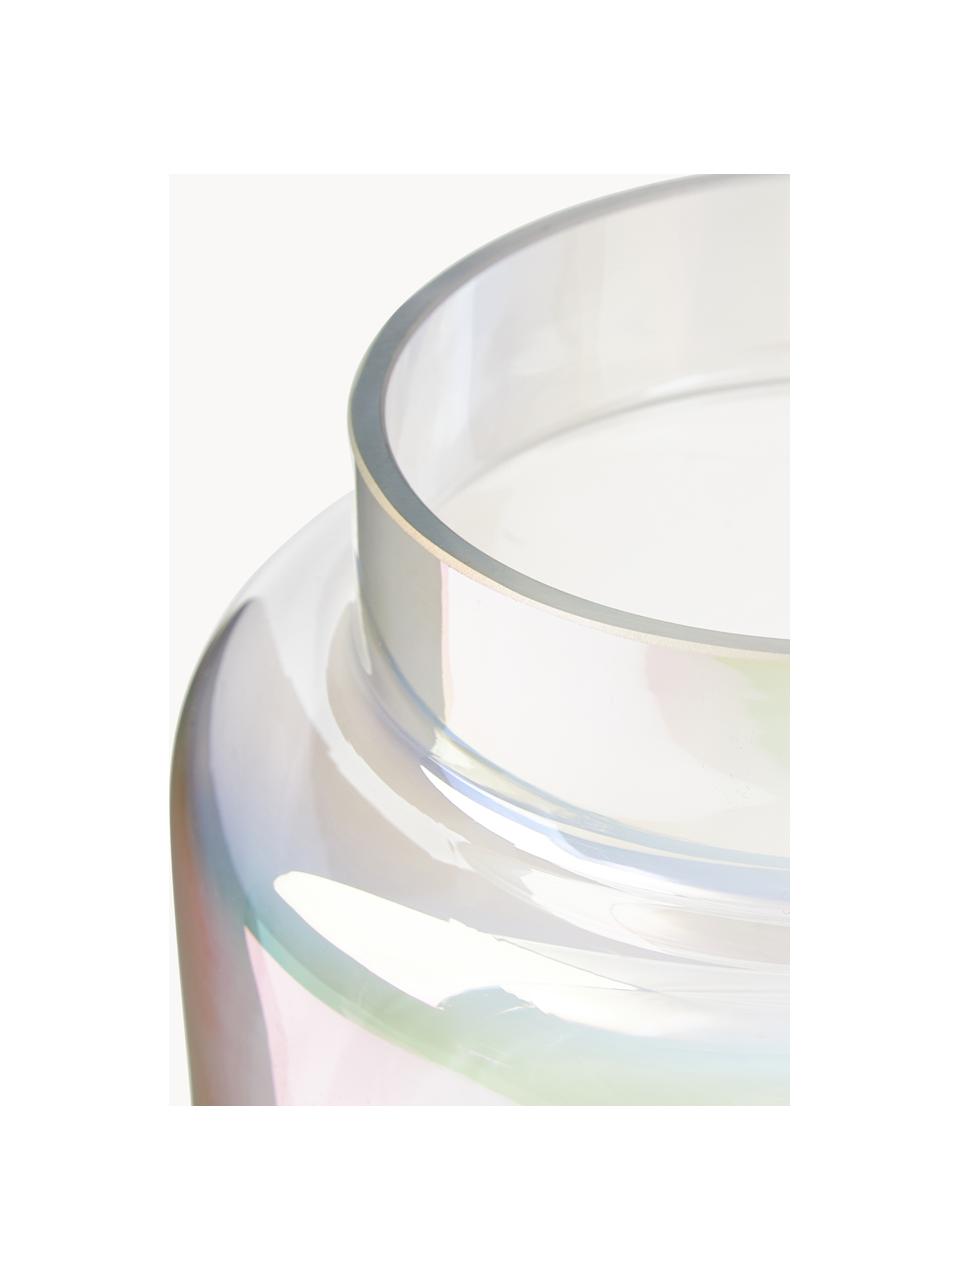 Vaso in vetro iridescente Lasse, Vetro, Trasparente, iridescente, Ø 16 x Alt. 14 cm